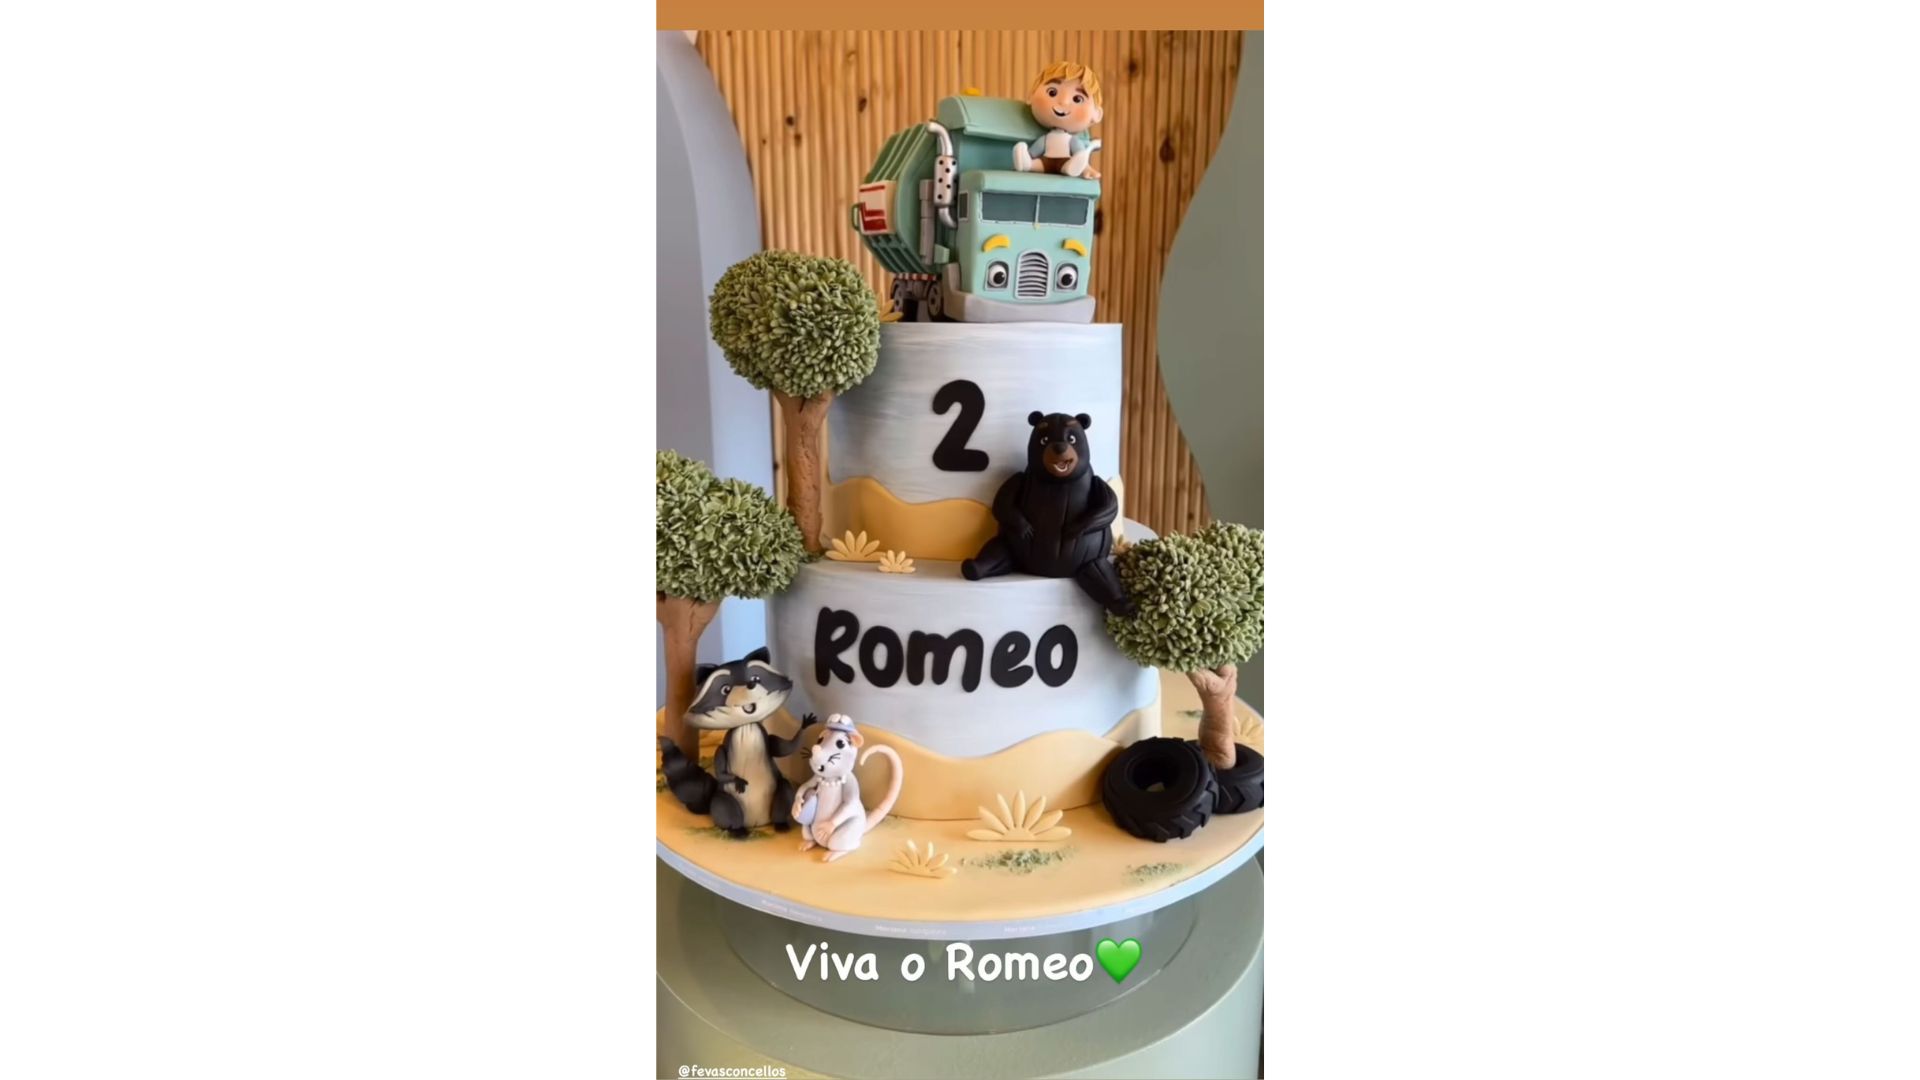 Bolo de aniversário escrito Romeo, com decorações de animais e caminhão